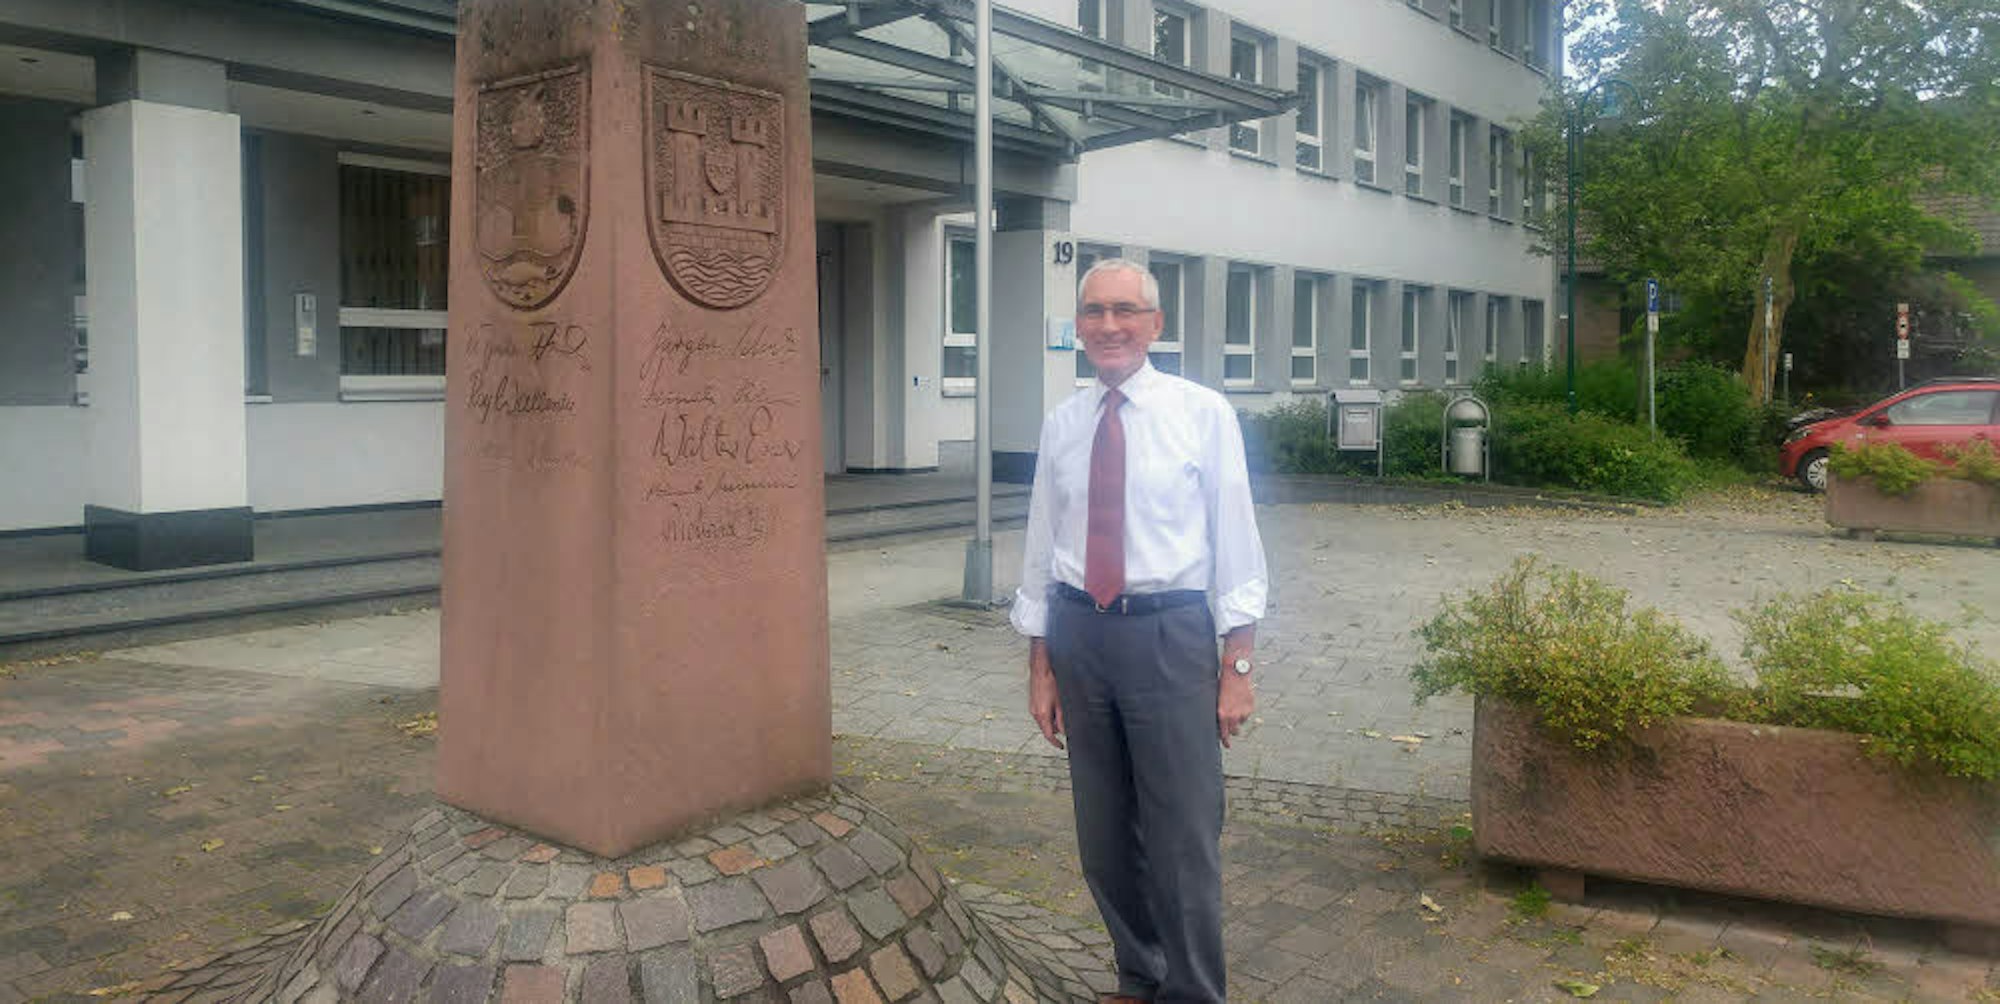 Zum Ende dieses Monats räumt der Erste Beigeordnete Helmut Esch seinen Arbeitsplatz im Niederkasseler Rathaus.